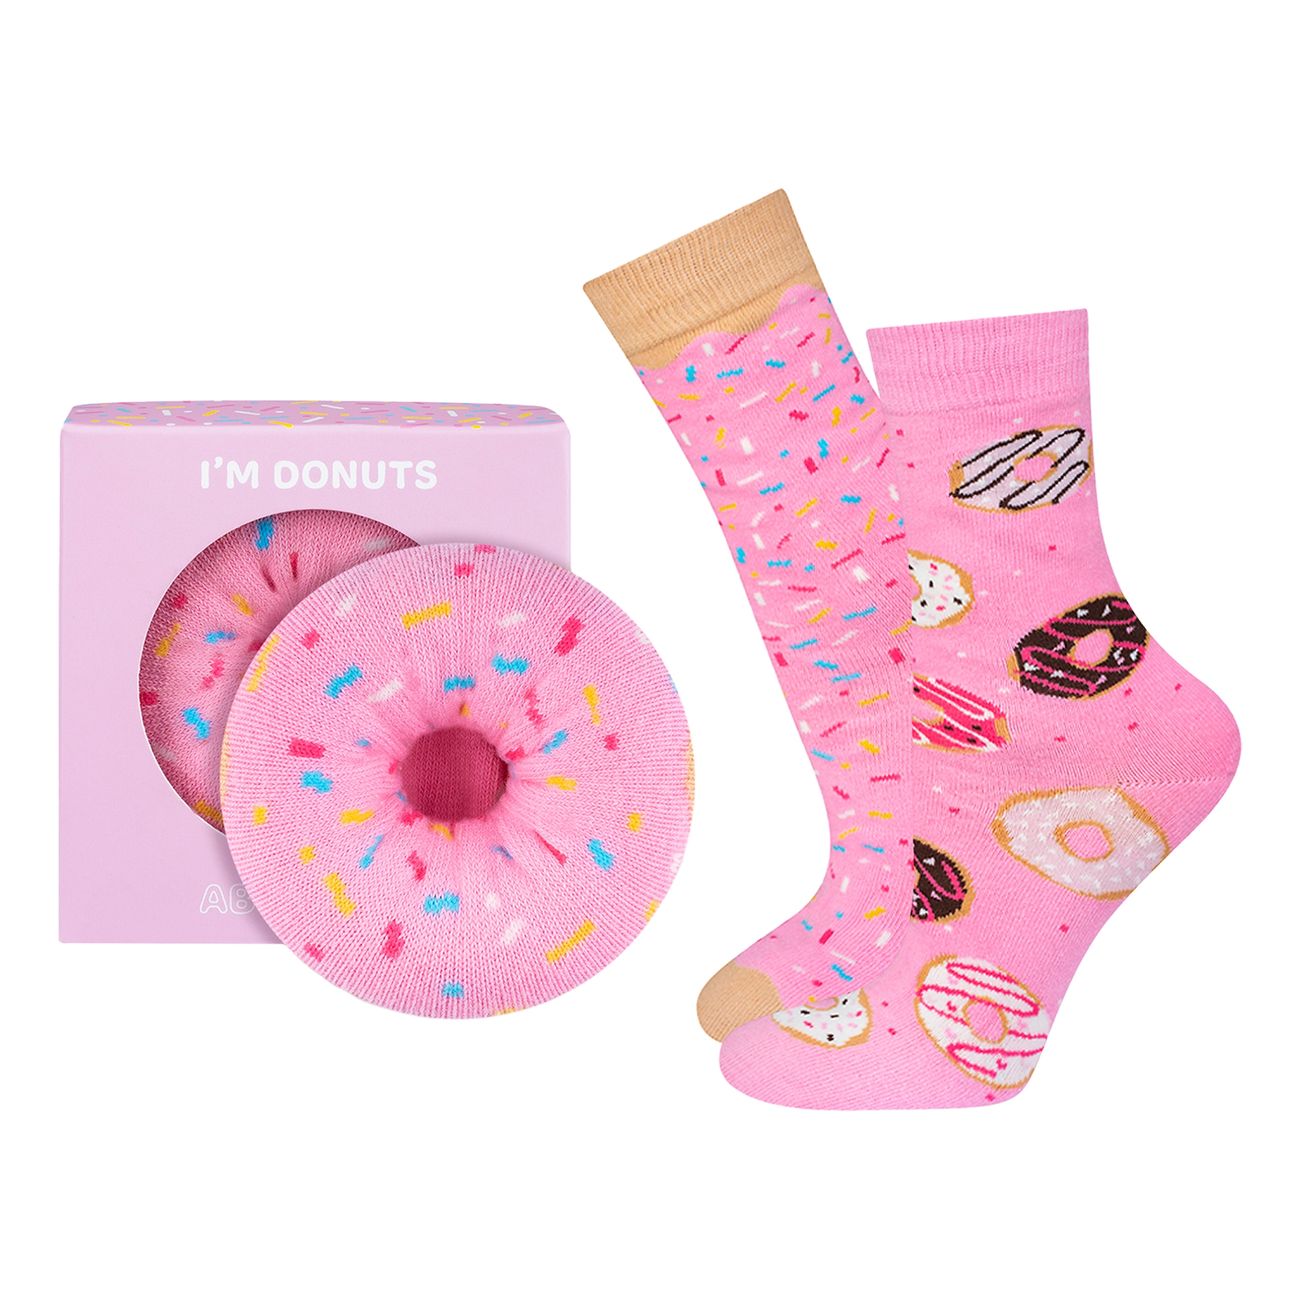 strumpor-donuts-85850-2